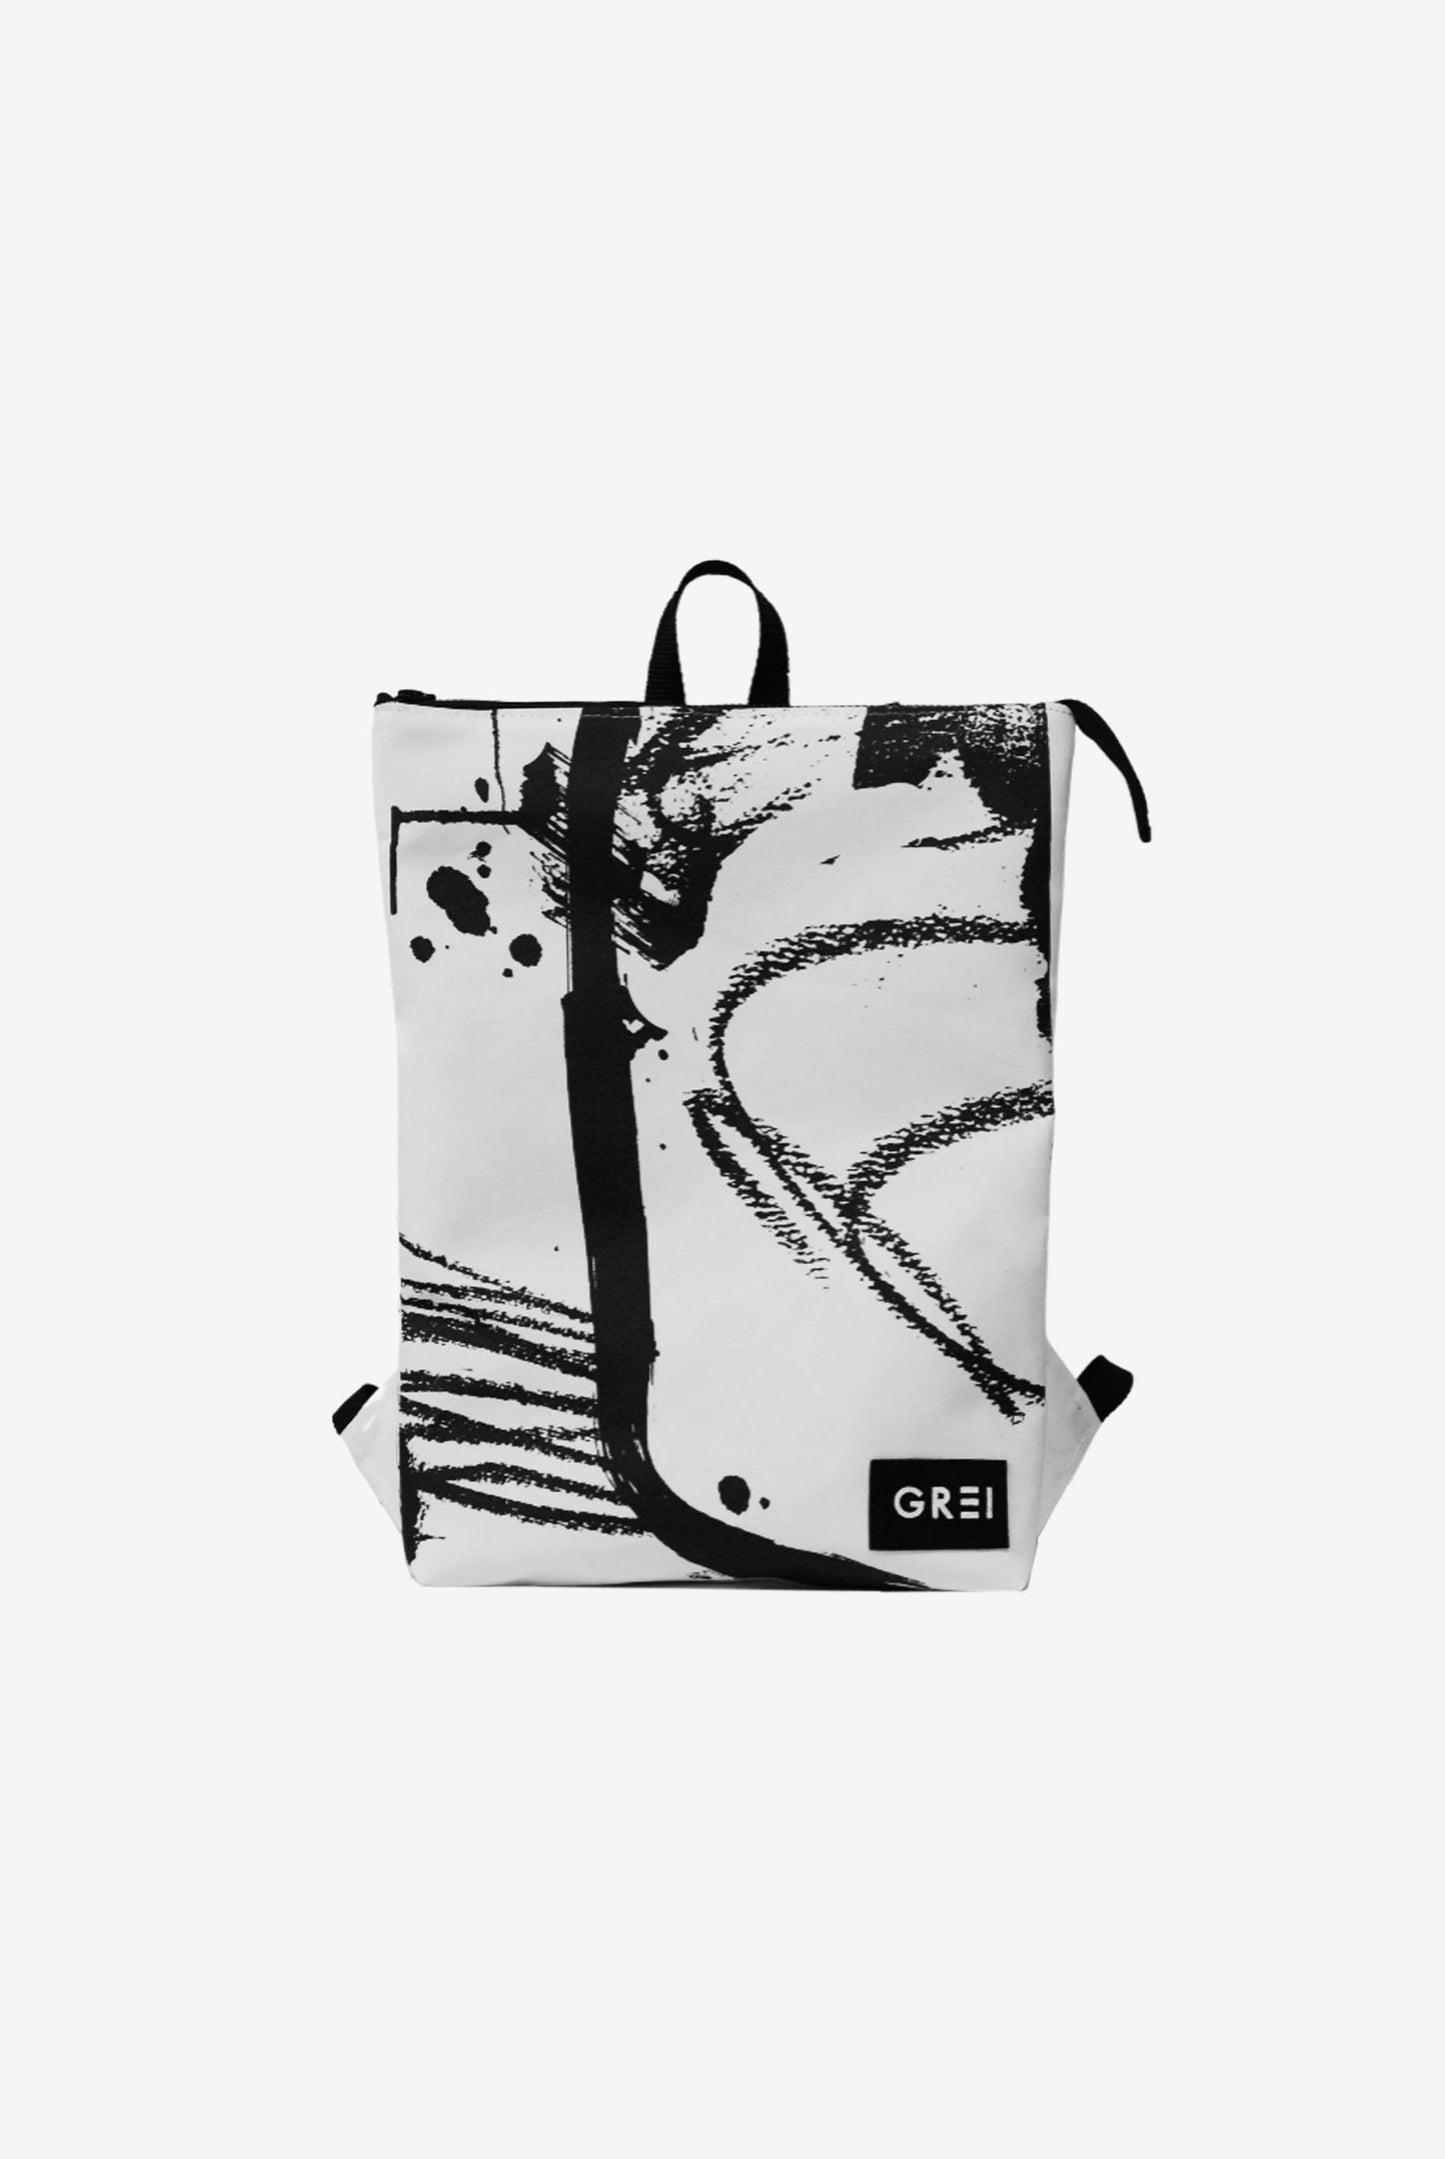 GREI Backpack Brush White - Black